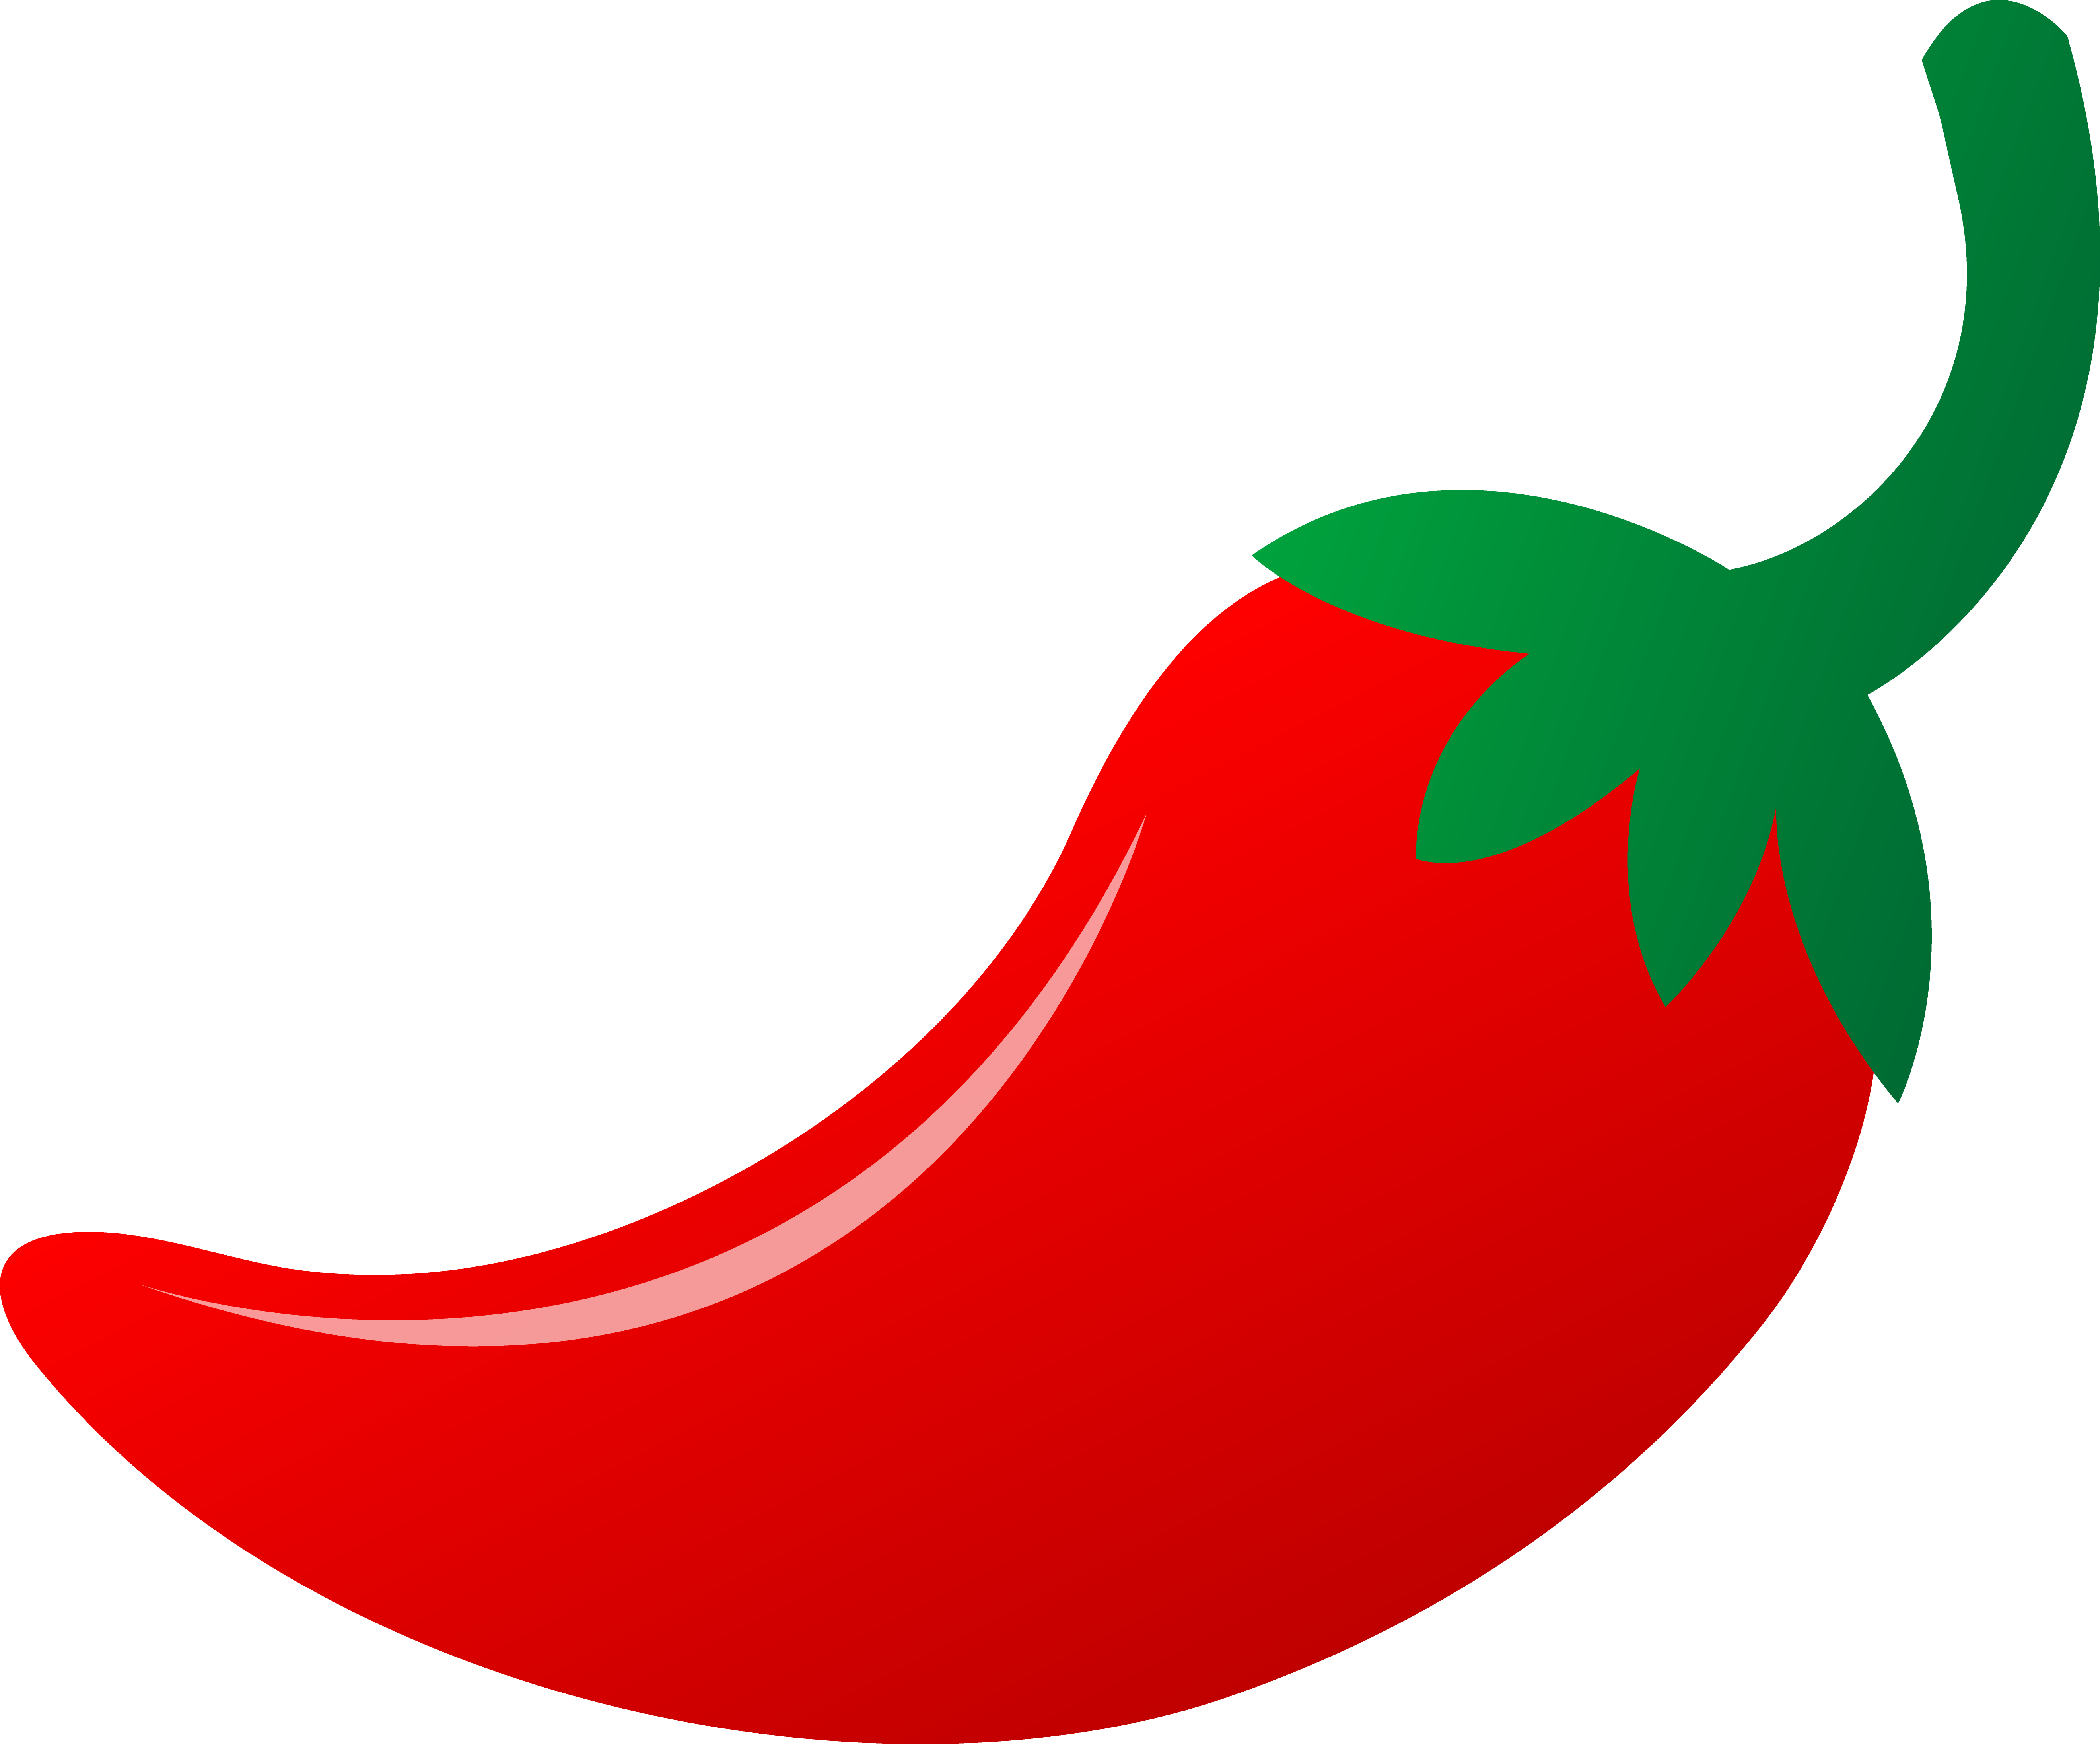 Hot Red Chili Pepper - Free Clip Art